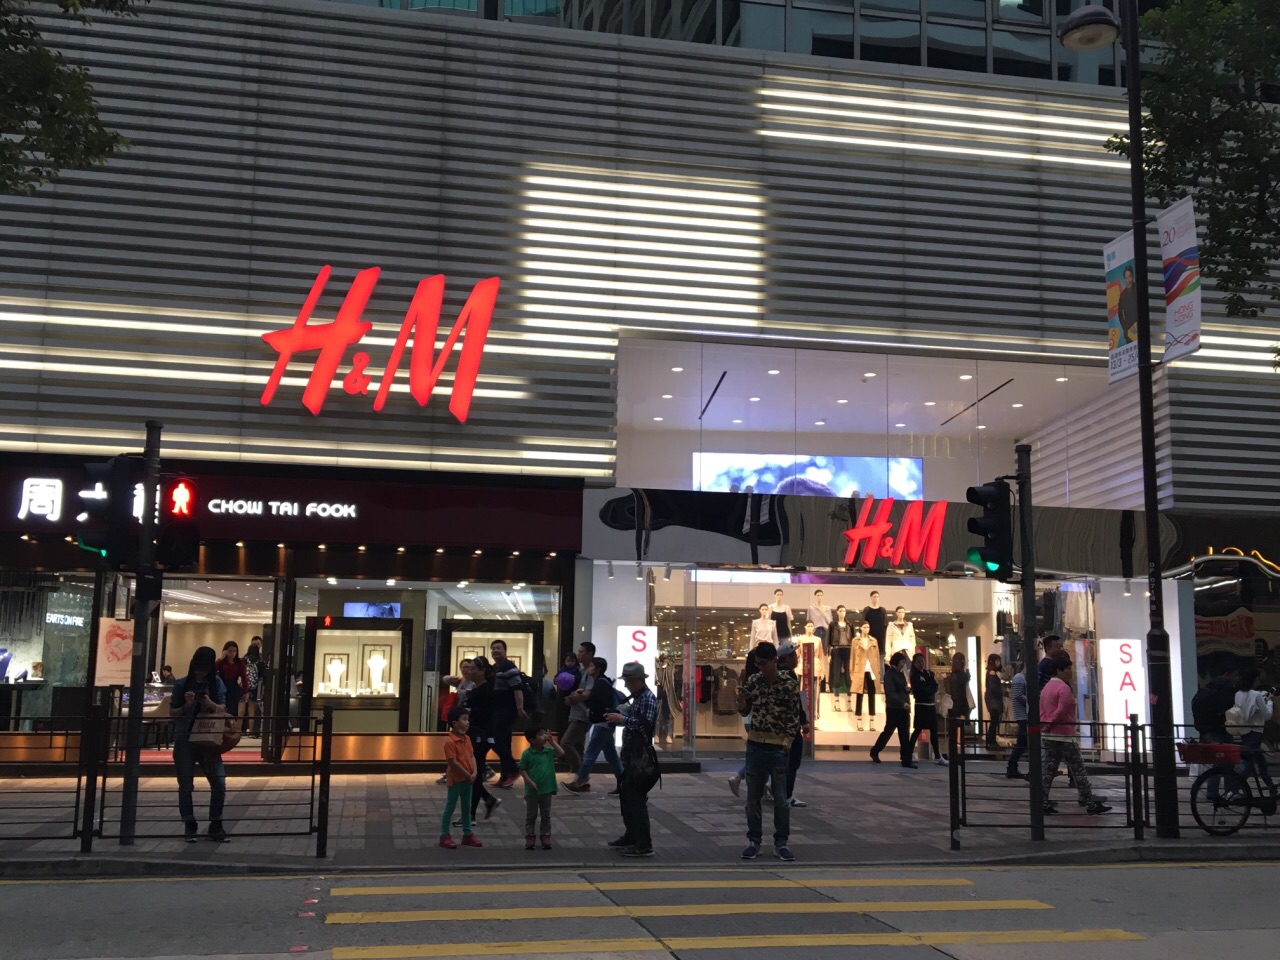 携程攻略 香港h M 新港中心店 购物 香港的快销类服饰品牌店很多 像zara 玛莎 Gap这几家的能见度都很